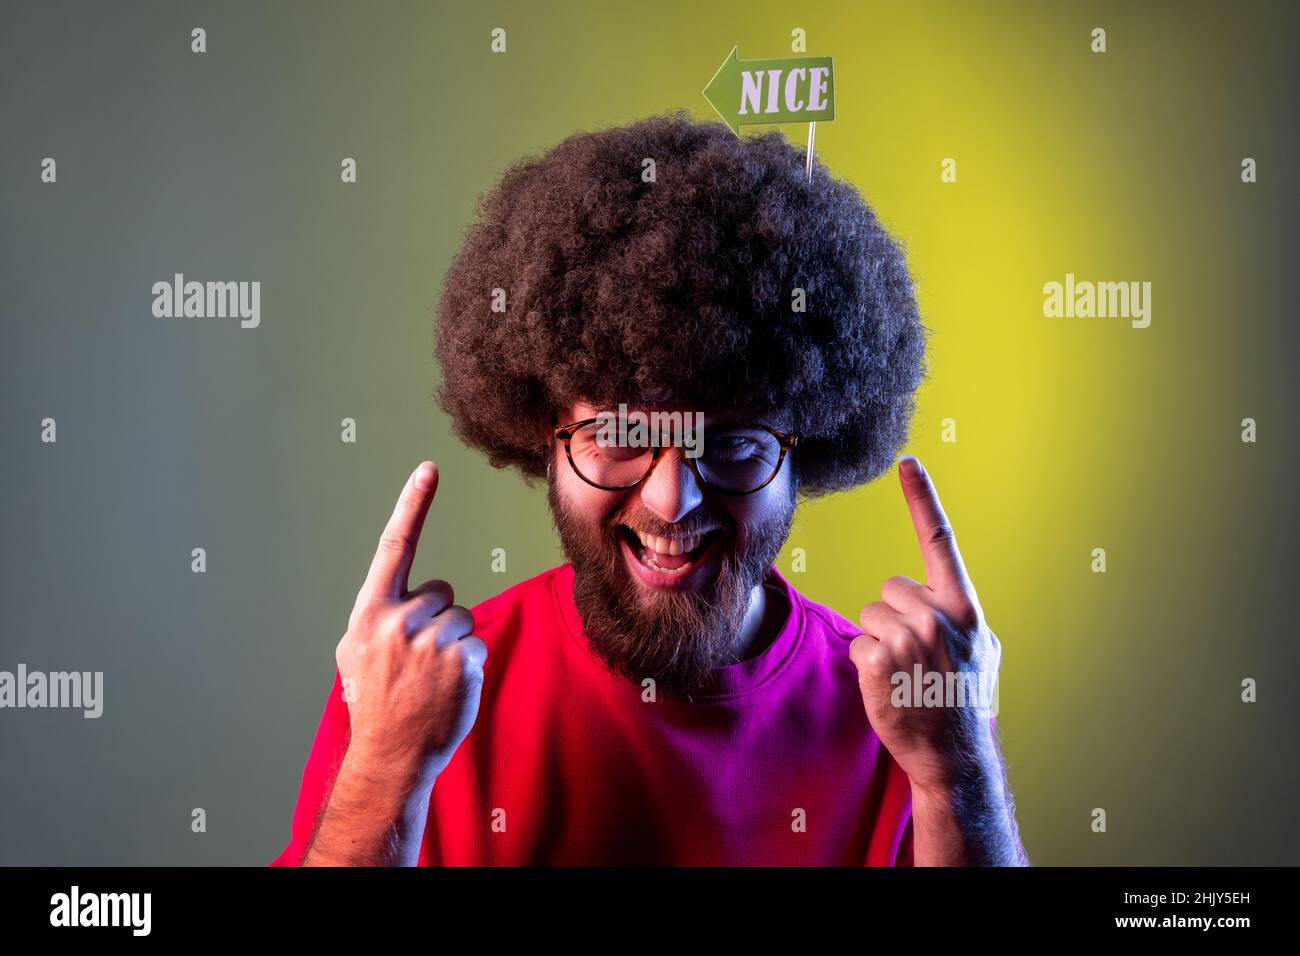 Portrait eines positiven, lustigen Hipster-Mannes mit Afro-Frisur, der auf Party-Requisiten mit schöner Inschrift im Haar zeigt und ein Sweatshirt trägt. Innenaufnahmen im Studio, isoliert auf farbigem Neonlicht-Hintergrund. Stockfoto